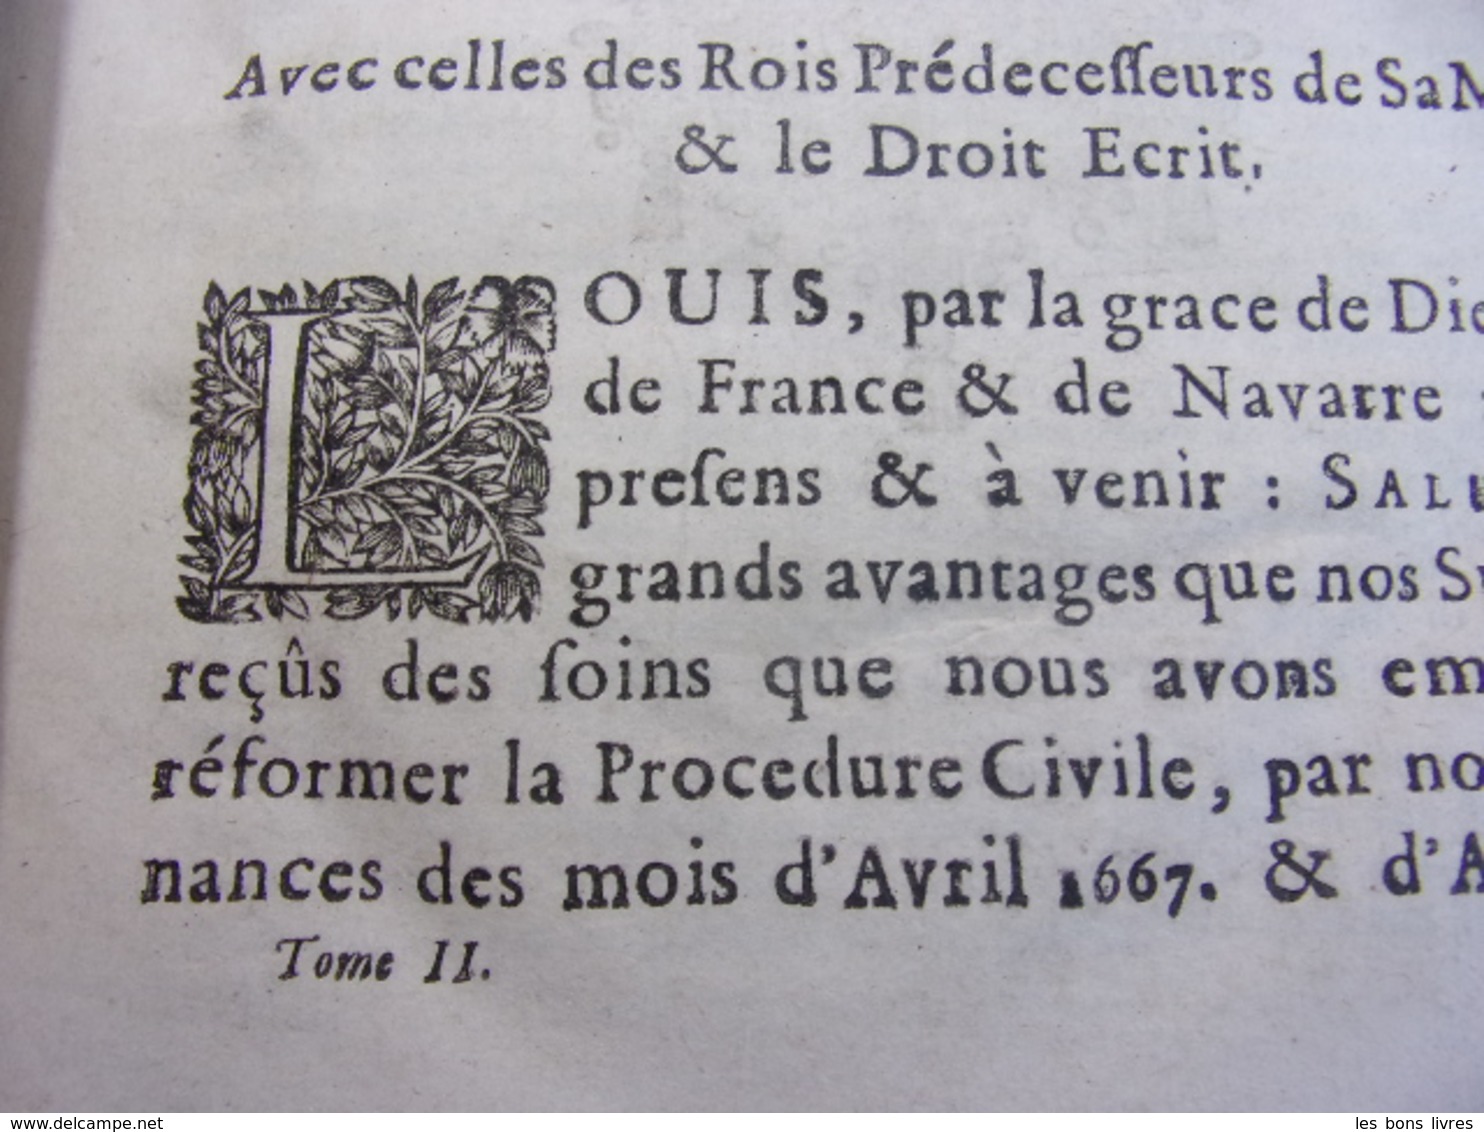 CONFÉRENCES DES ORDONNANCES DE LOUIS XIV, Roy De France Et De Navarre - Jusque 1700